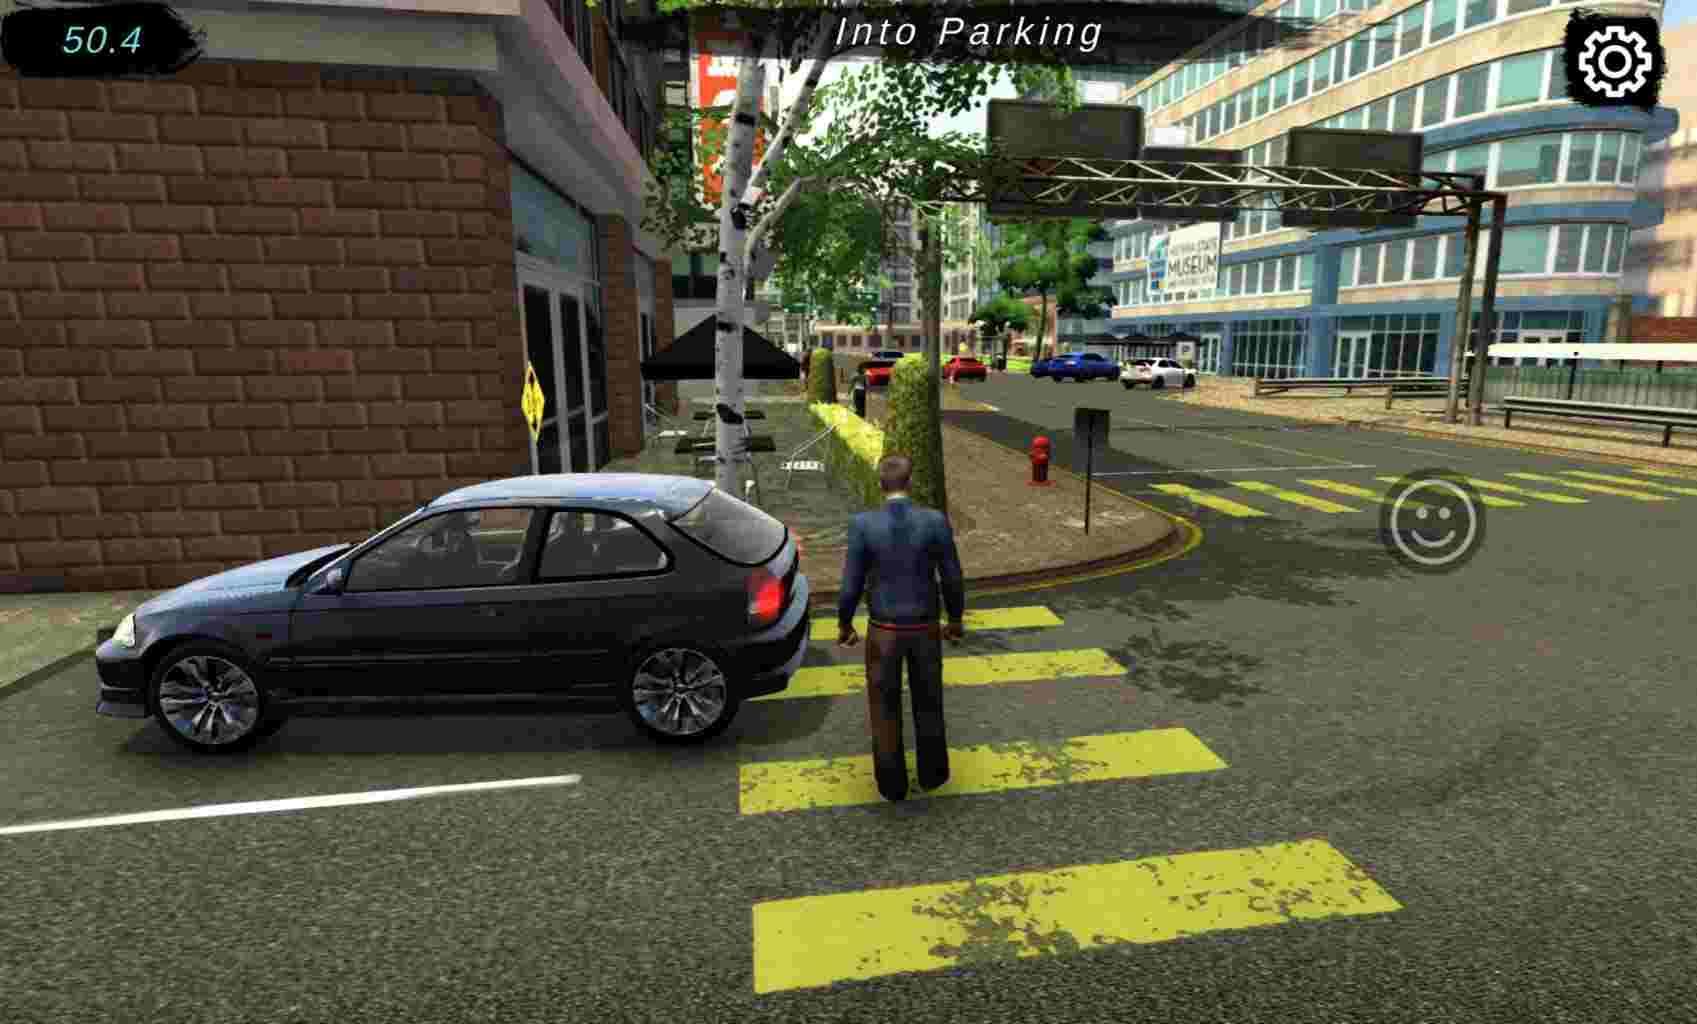 Car parking multiplayer mod apk v4.5.5 hack